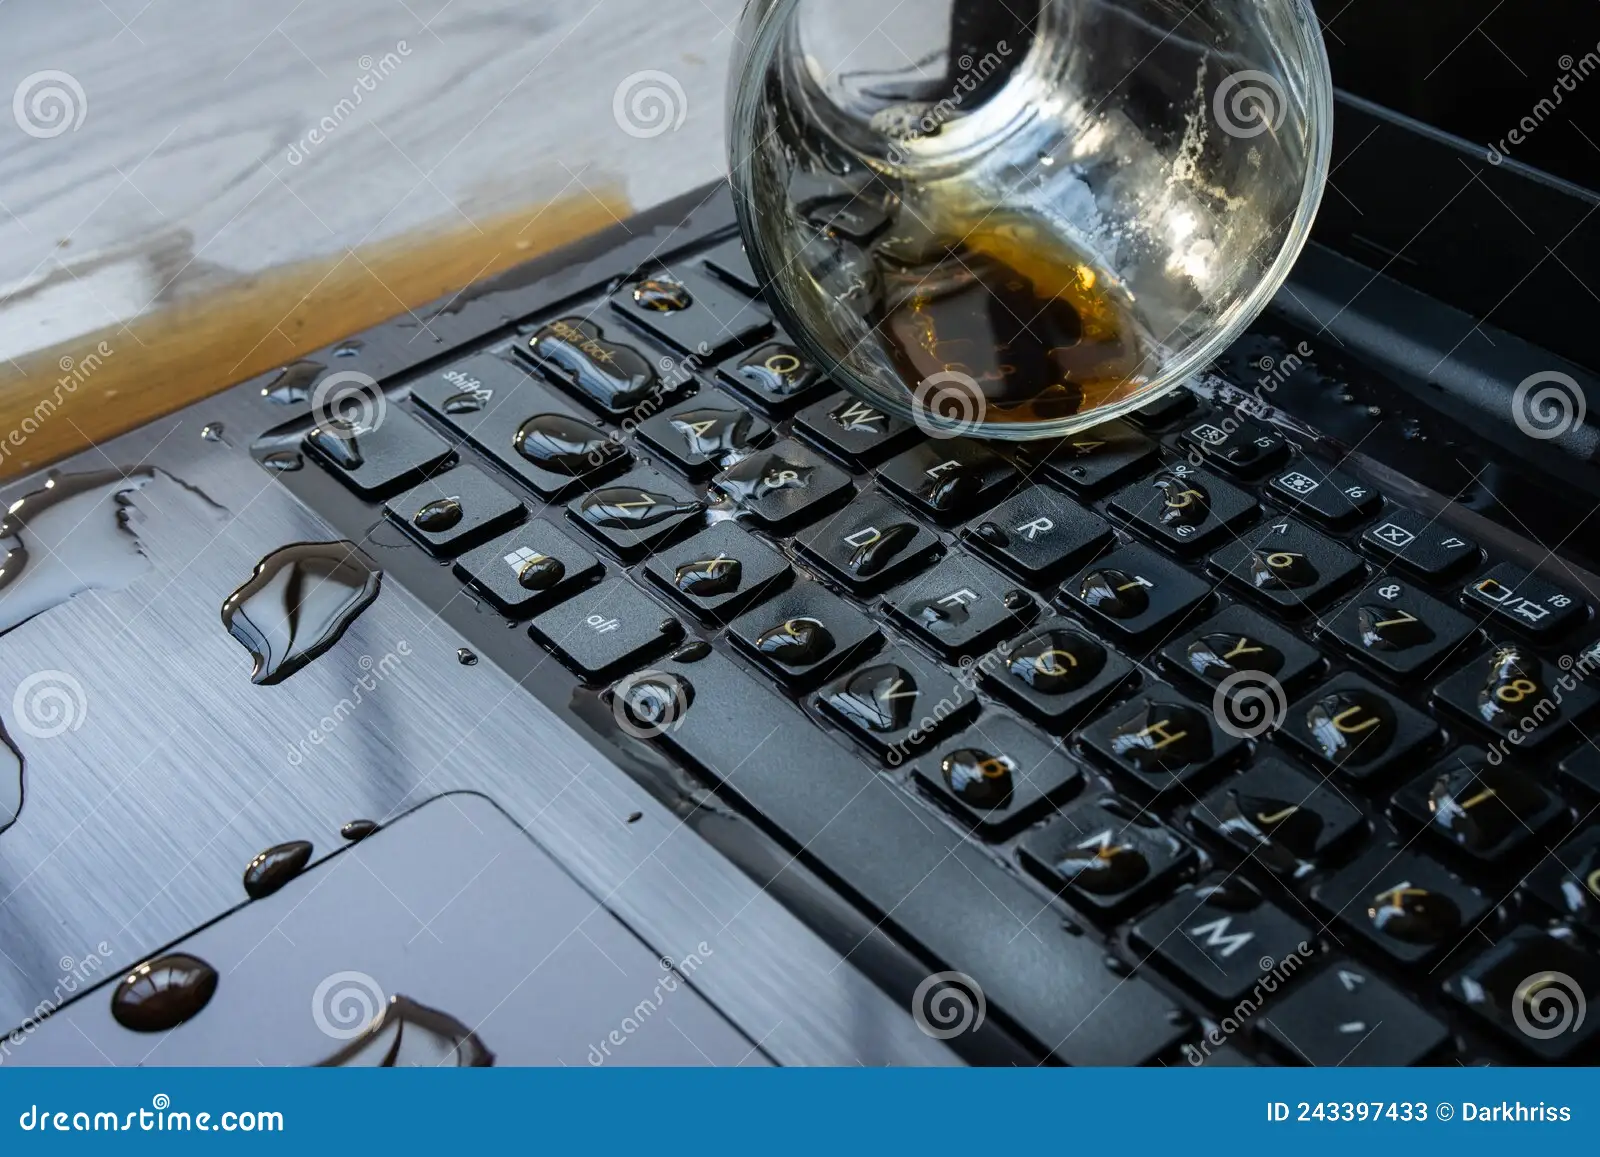 Spilling Beer On Laptop